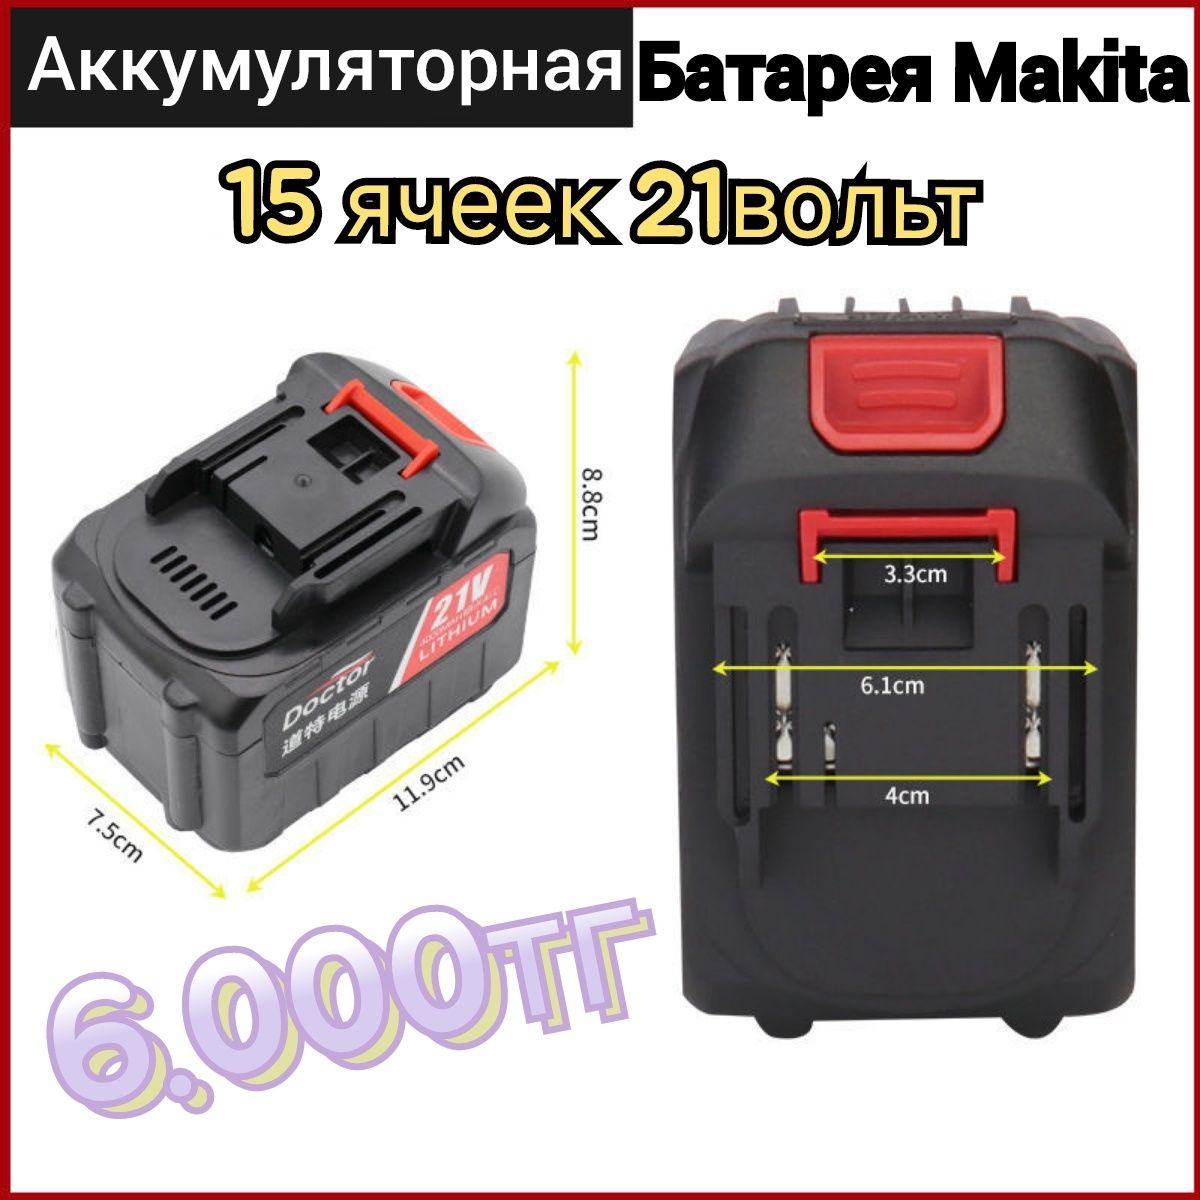 Аккумуляторная батарея Makita Аккумулятор для электроинструмента Макит